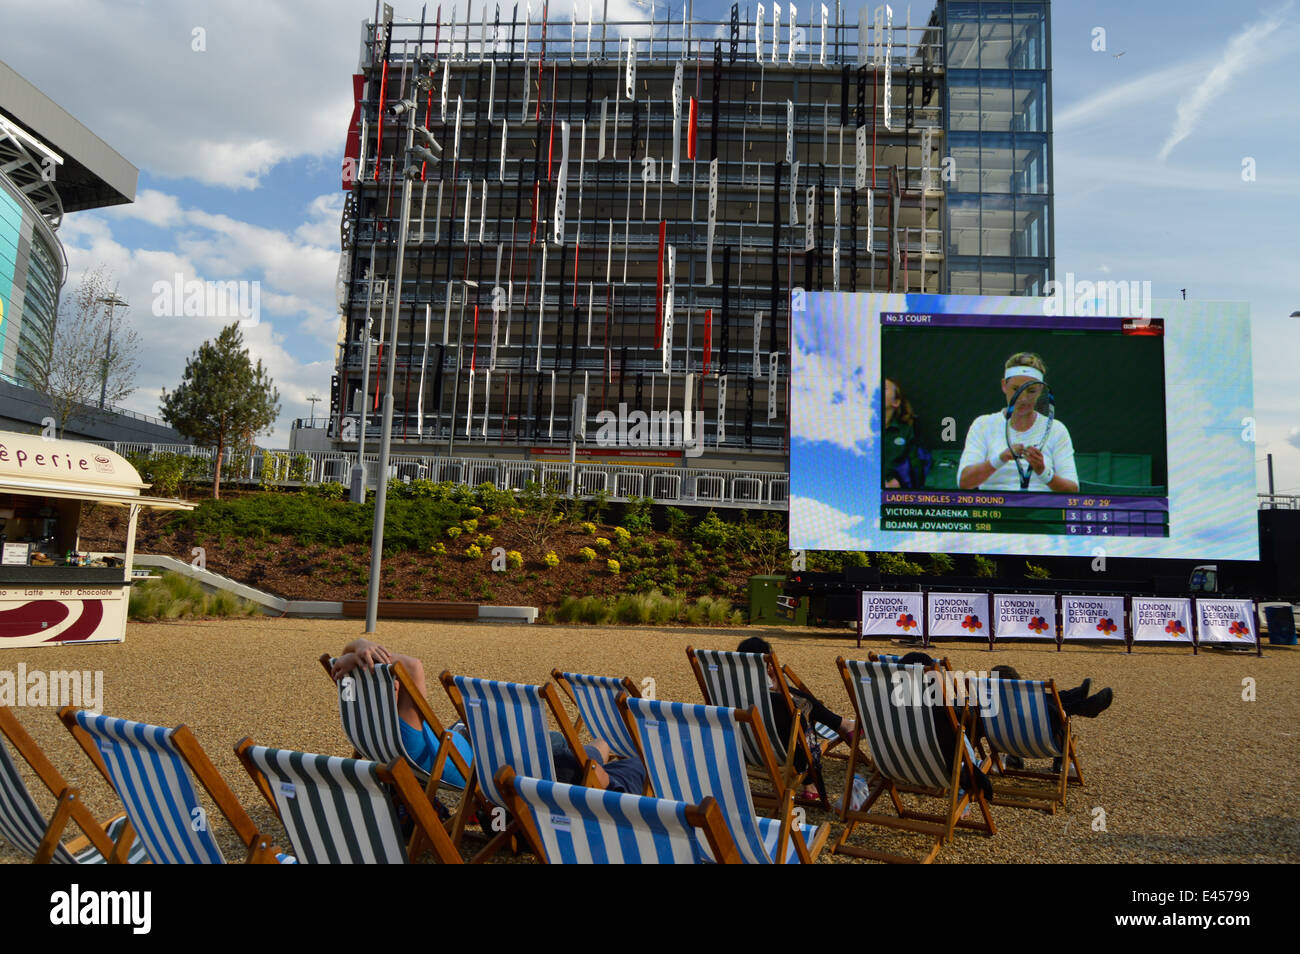 Juego de tenis en directo en la pantalla grande fuera del estadio de Wembley, London, UK Foto de stock